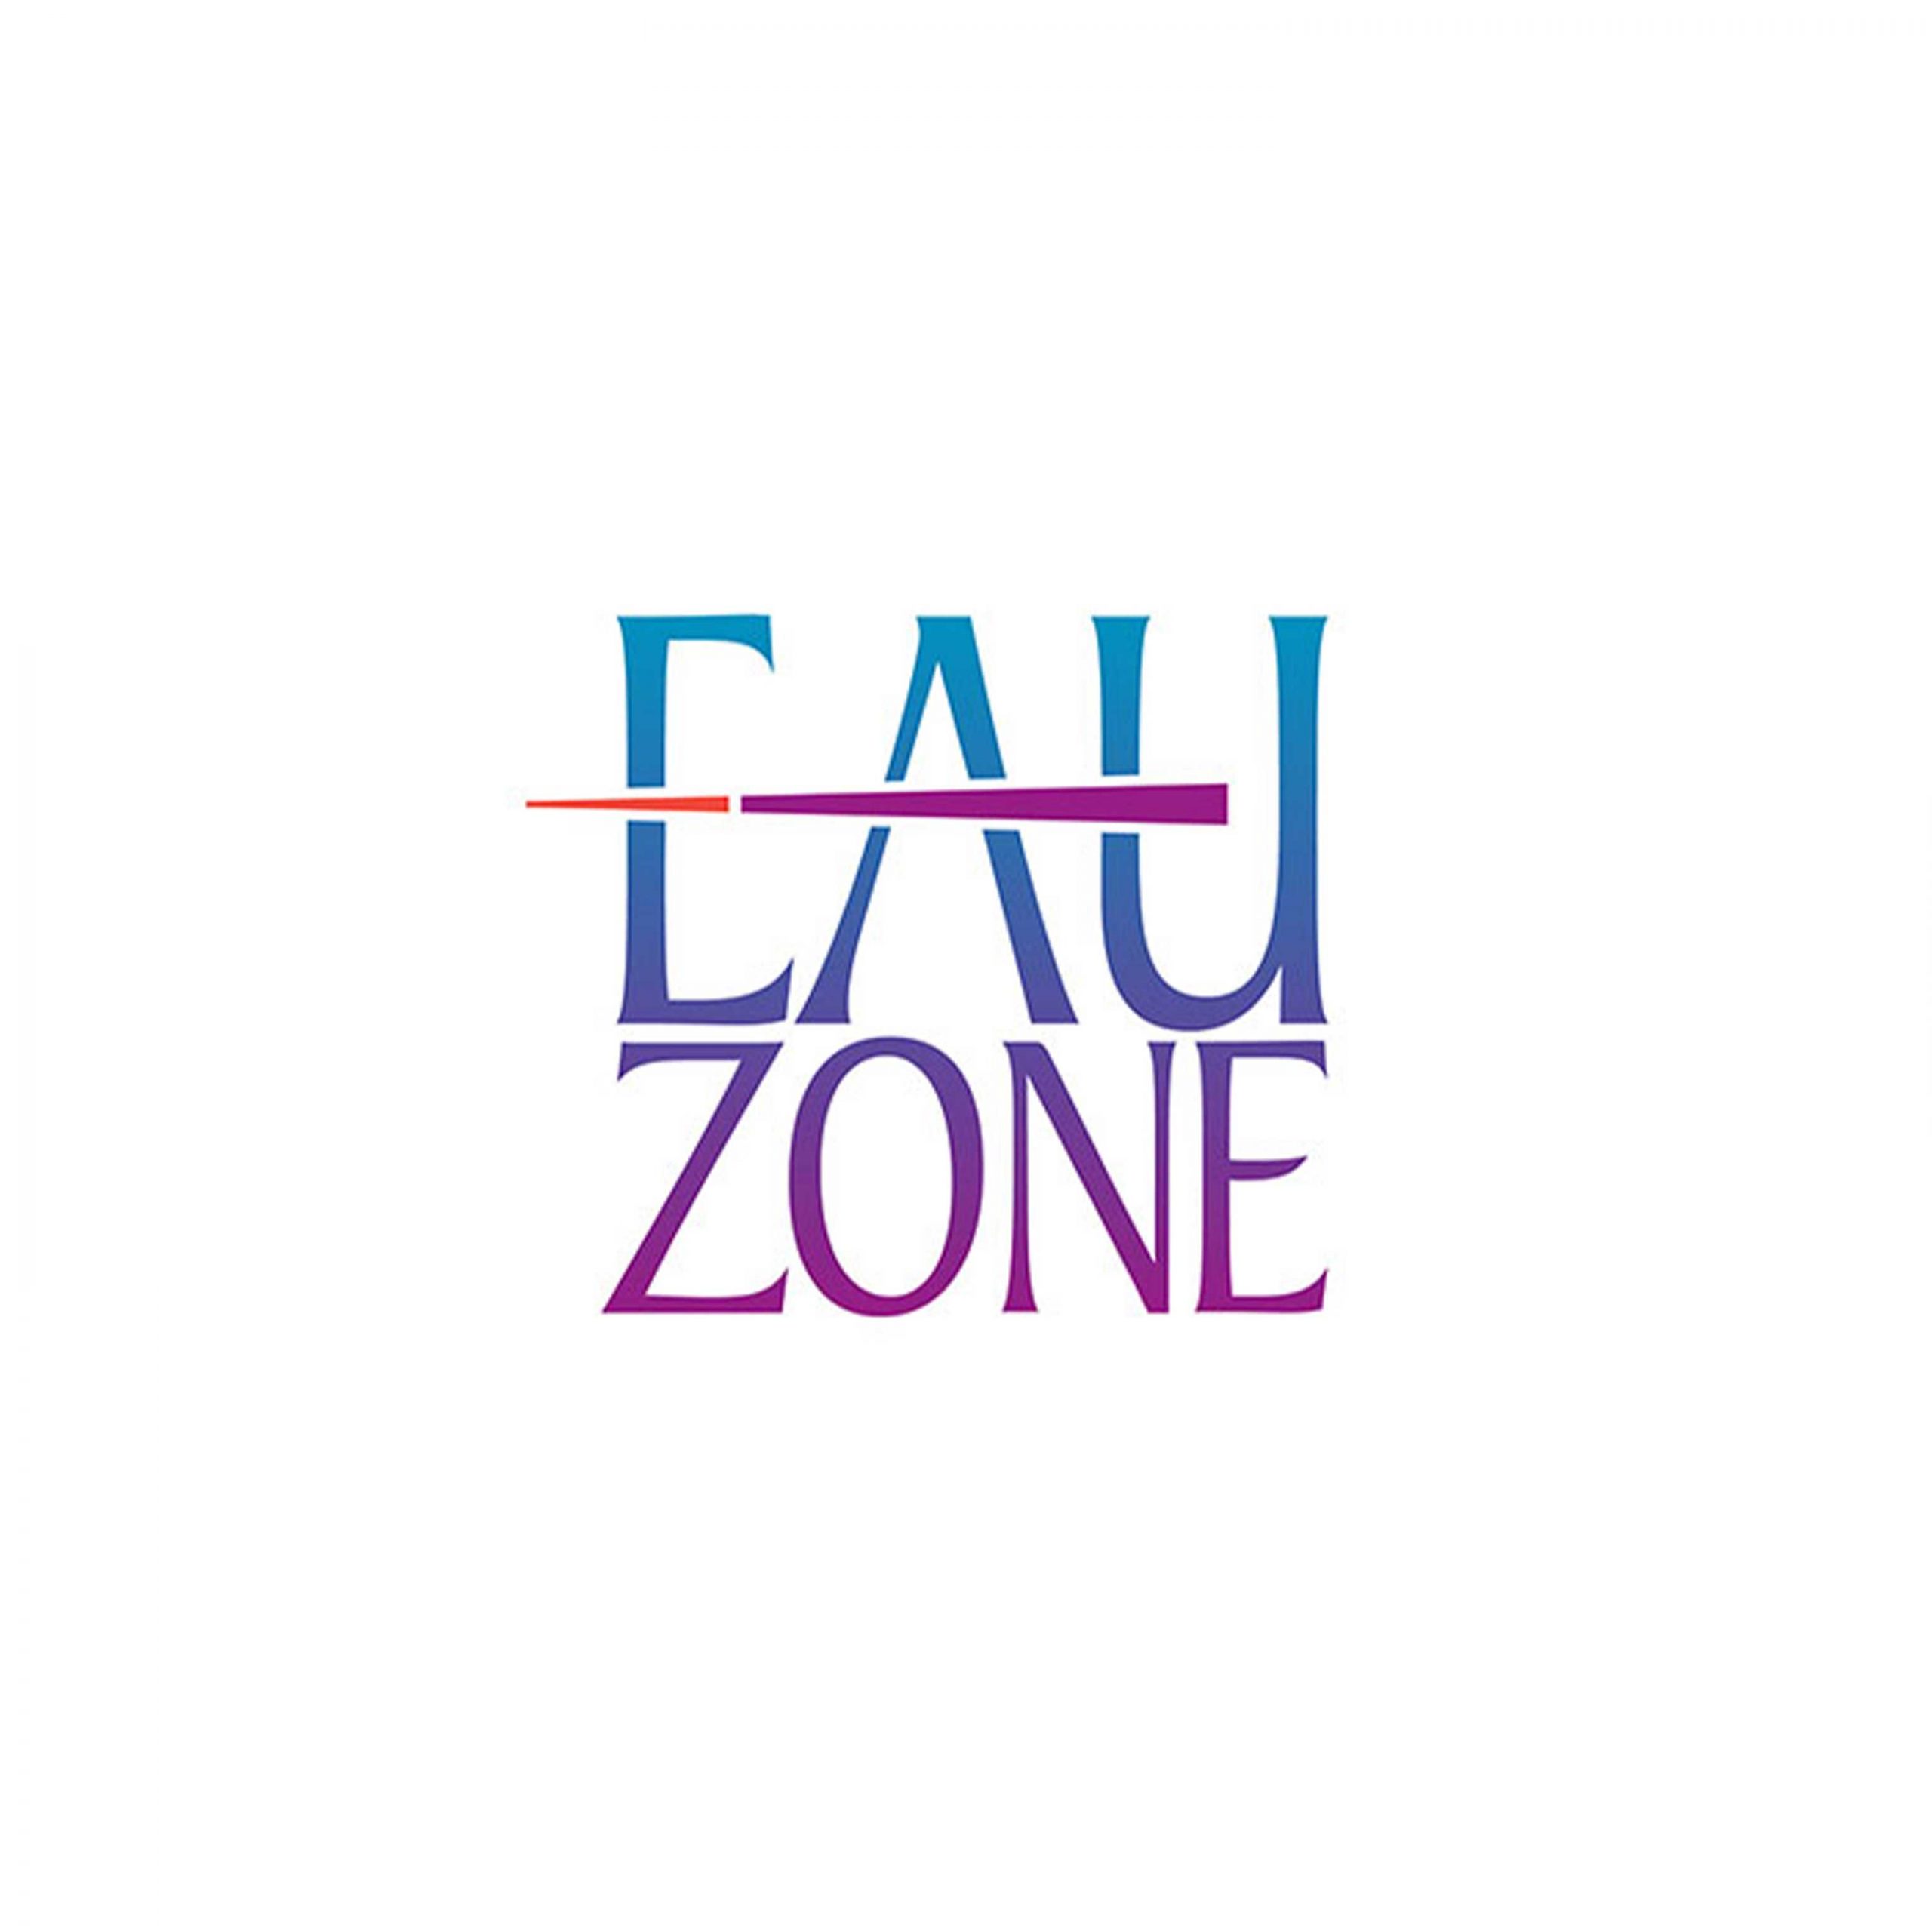 Eauzone - Coming Soon in UAE